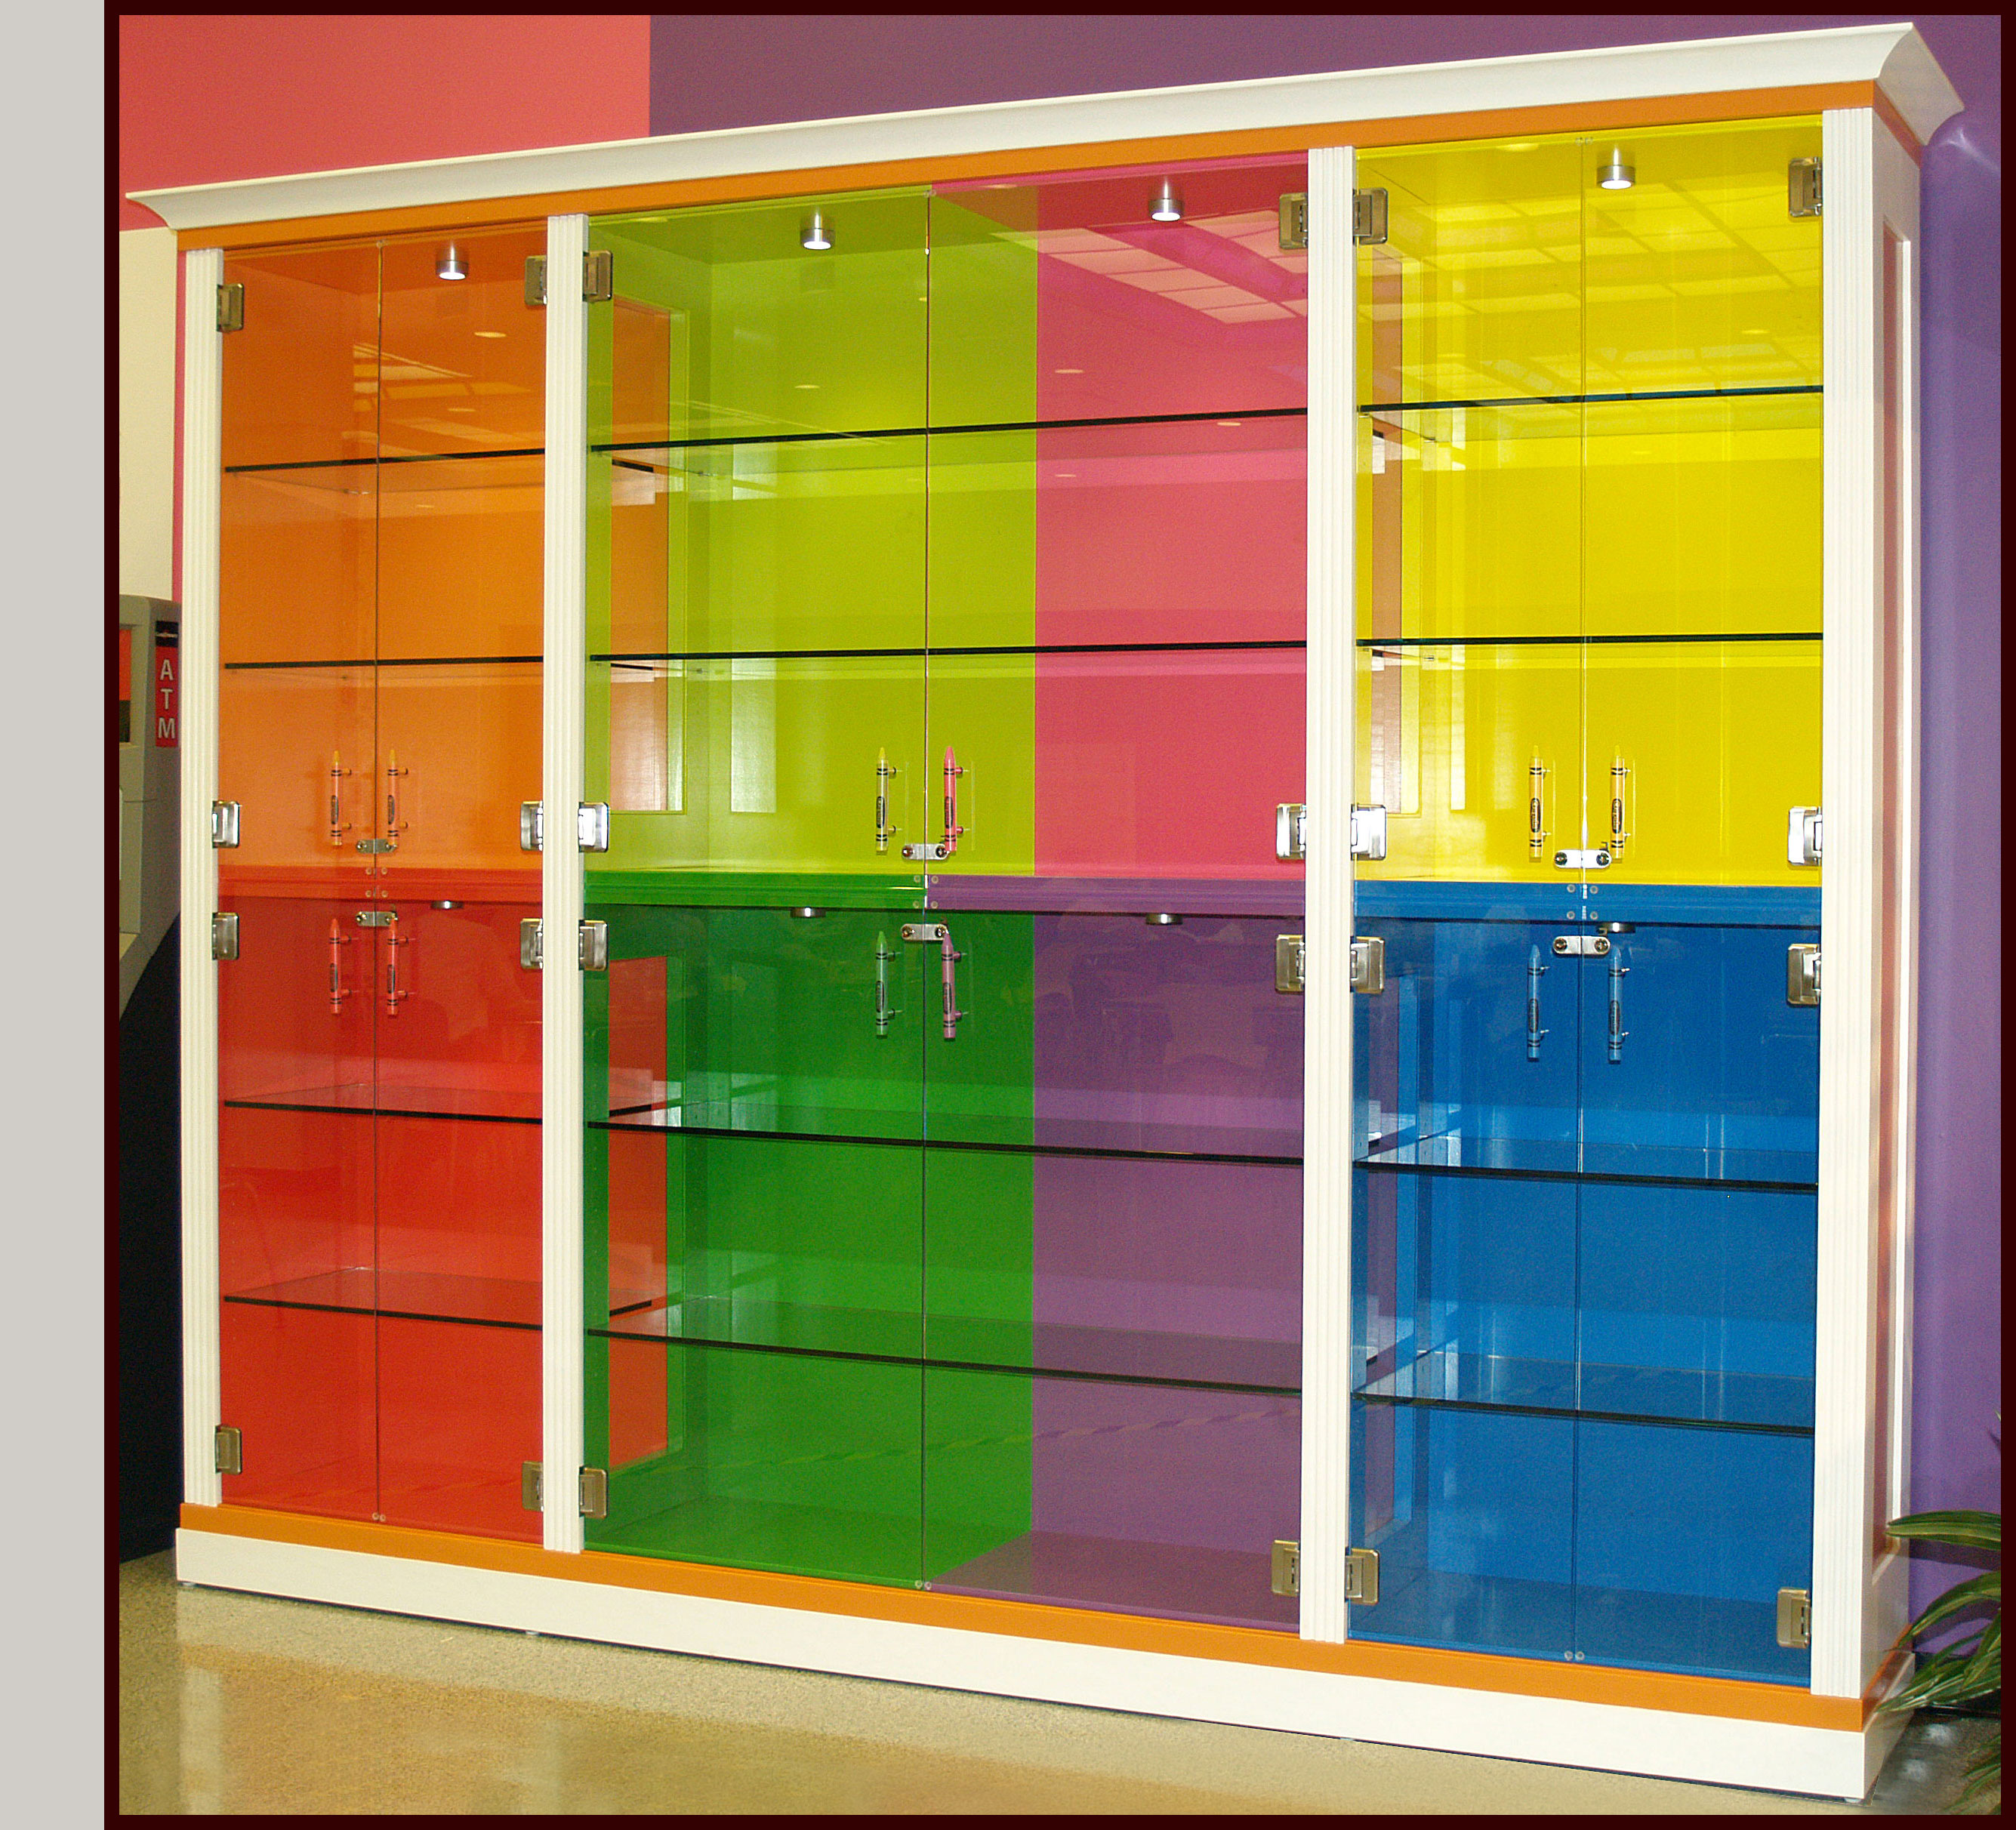 Crayola Custom Display Cabinet